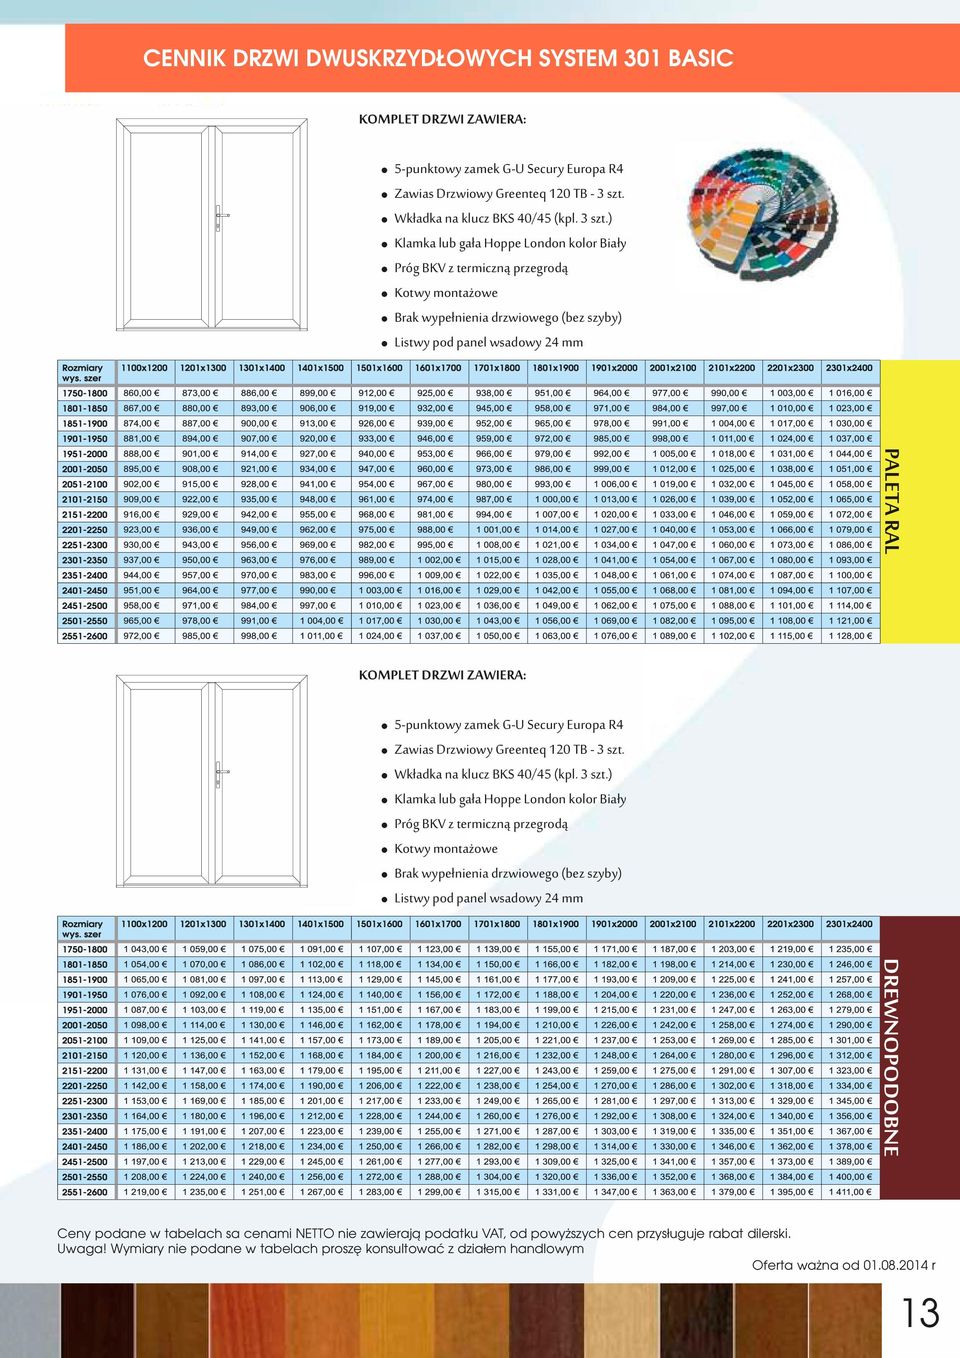 ) Klamka lub gała Hoppe London kolor Biały Próg BKV z termiczną przegrodą Kotwy montażowe Brak wypełnienia drzwiowego (bez szyby) Listwy pod panel wsadowy 24 mm PALTA AL KOMPLT DZW ZAWA: 5-punktowy